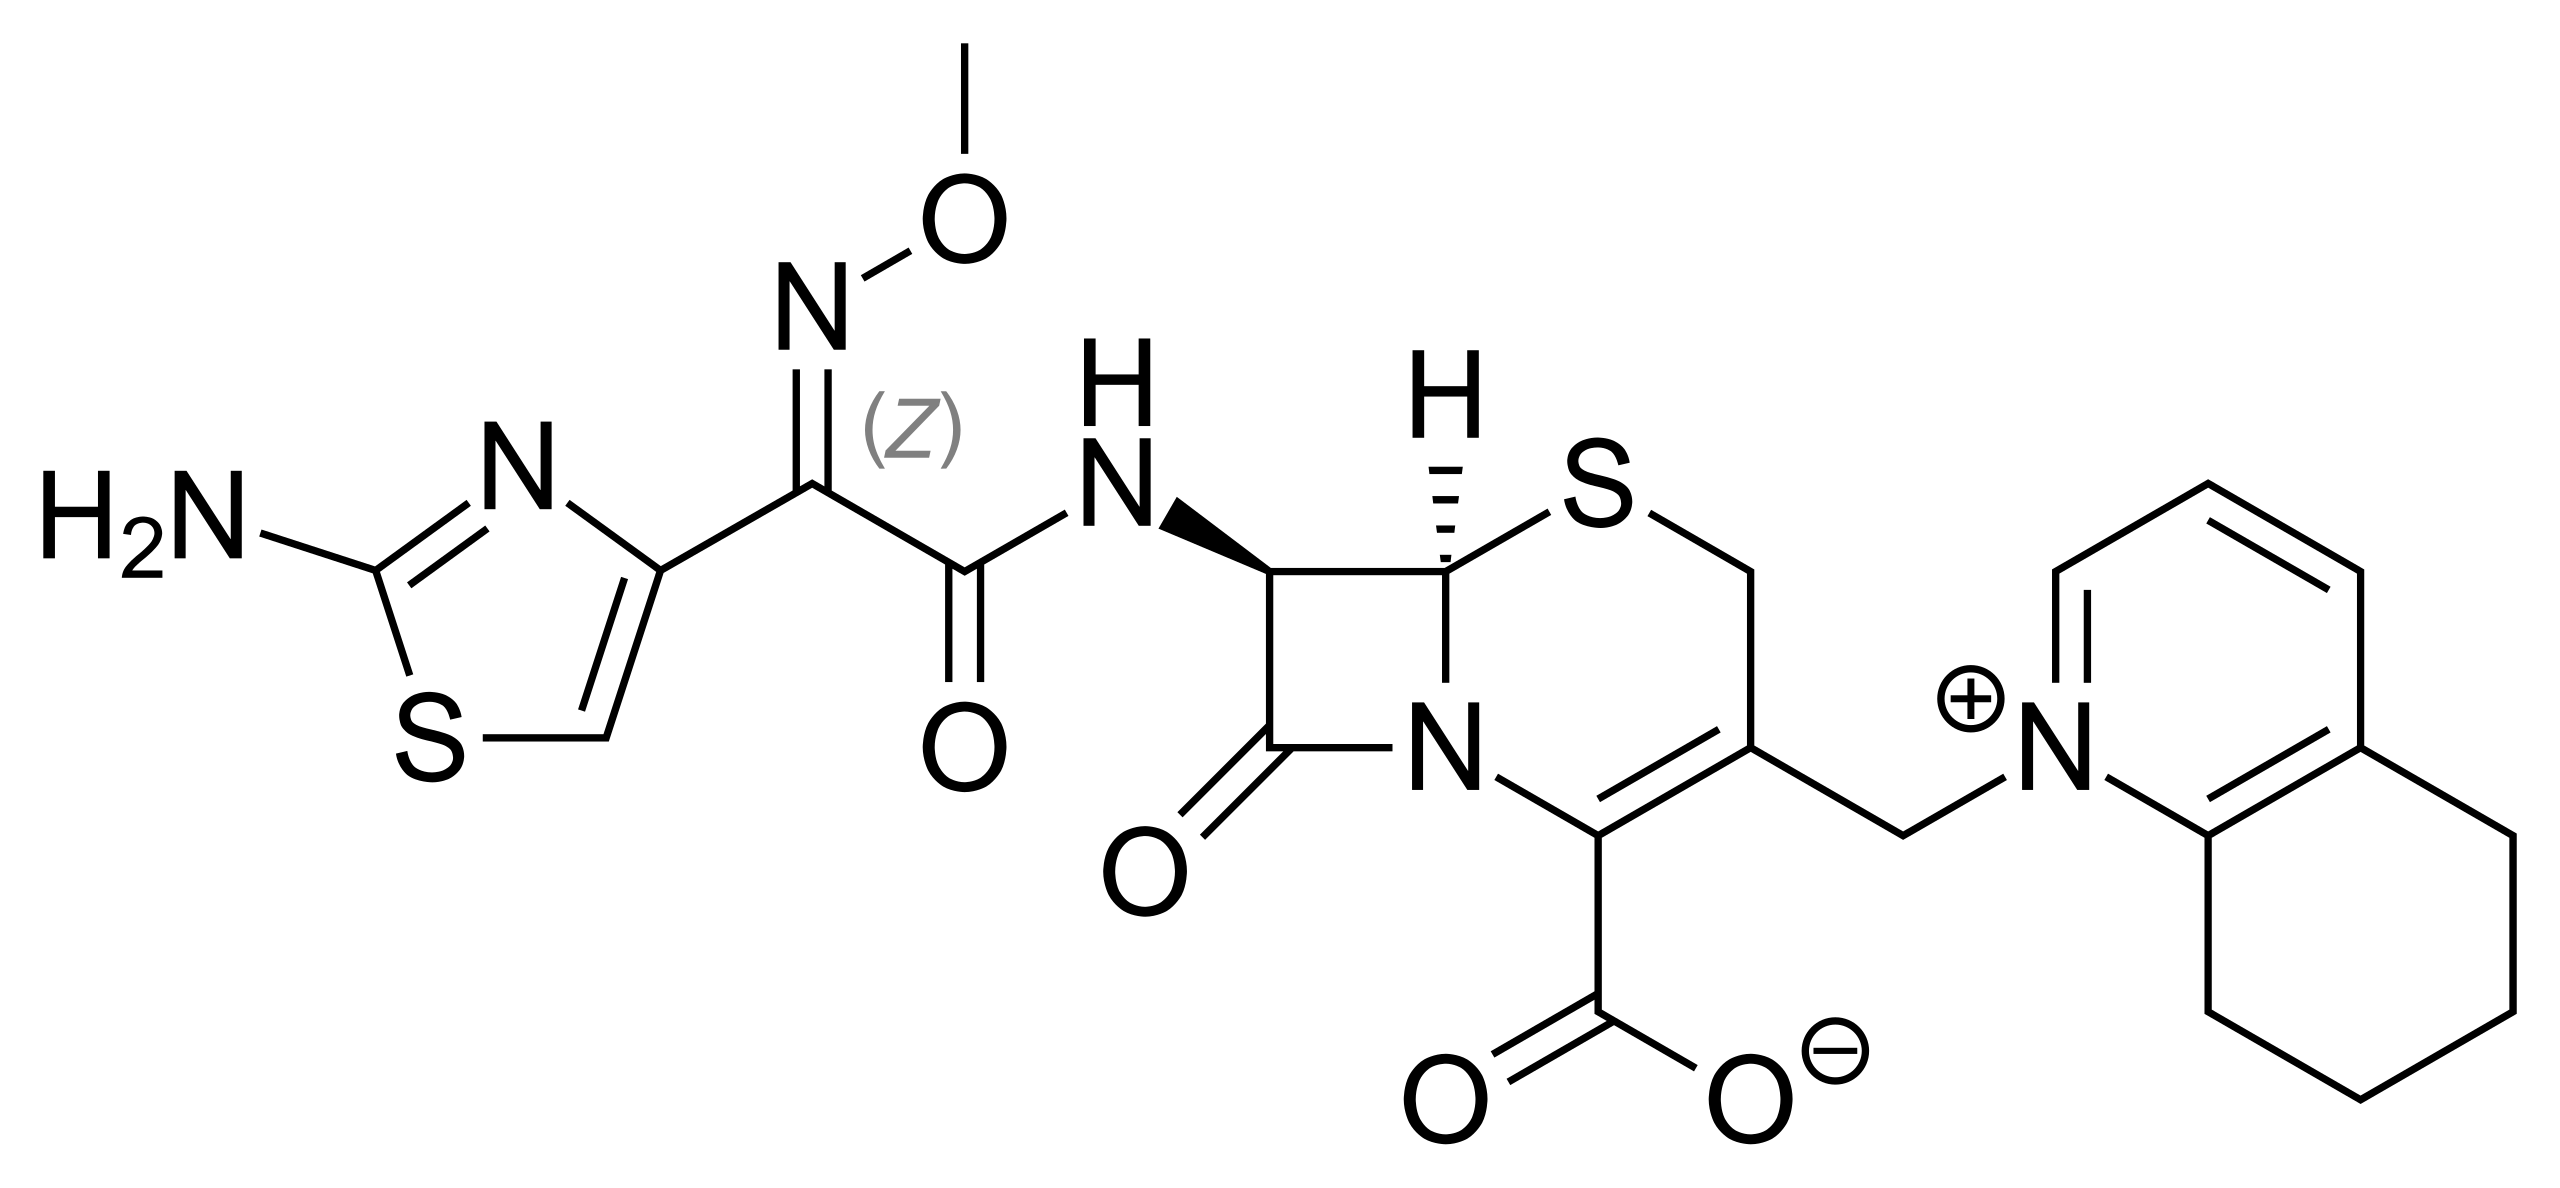 File:Roblox Logo Black.svg - Wikipedia